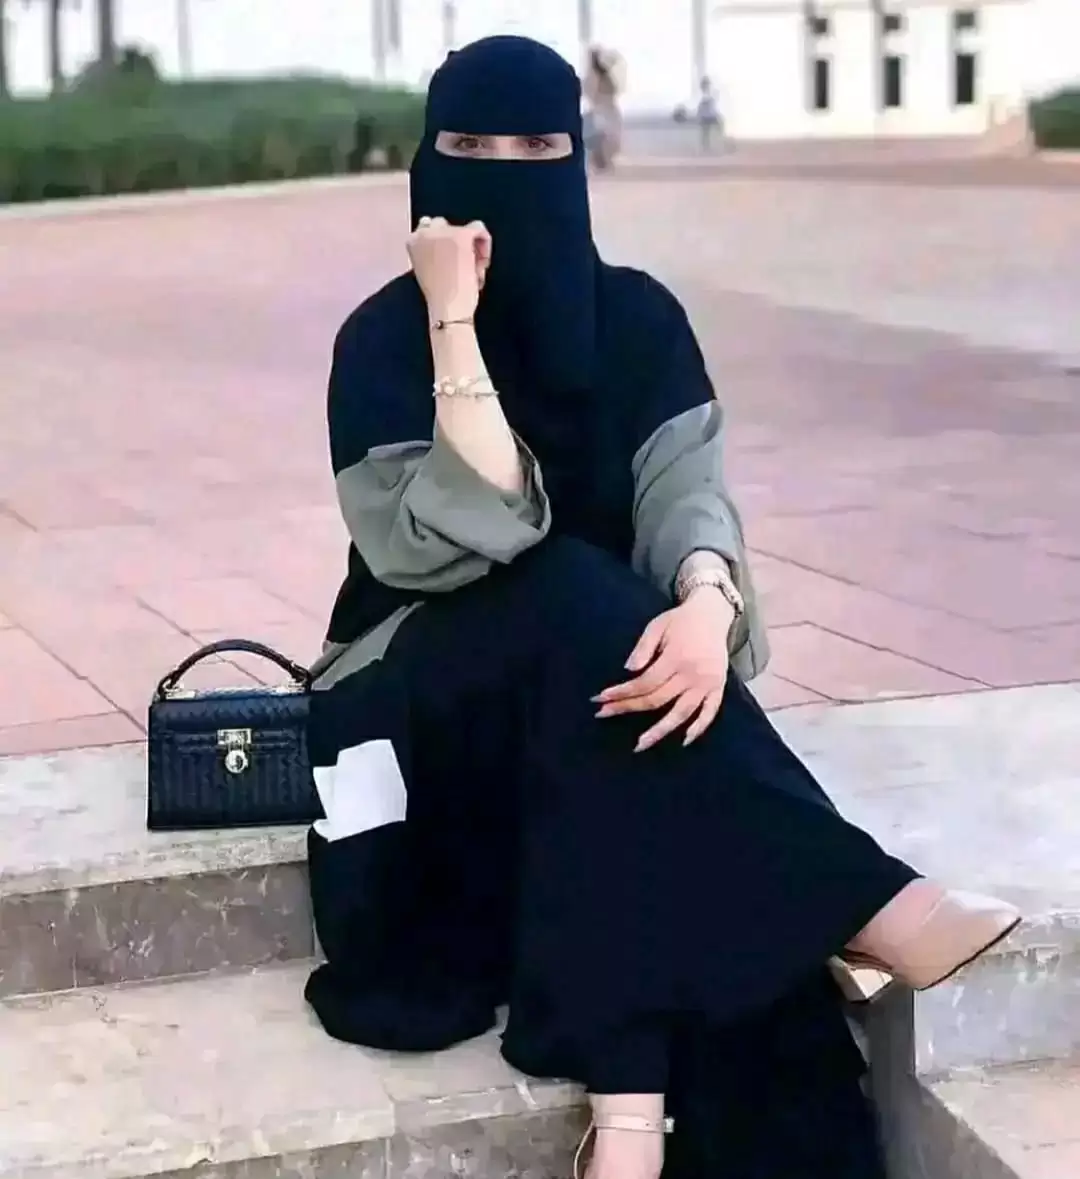 سعودية خلعت زوجها وتزوجت زميلها فوقع لها أمر كارثي جعلها تندم !